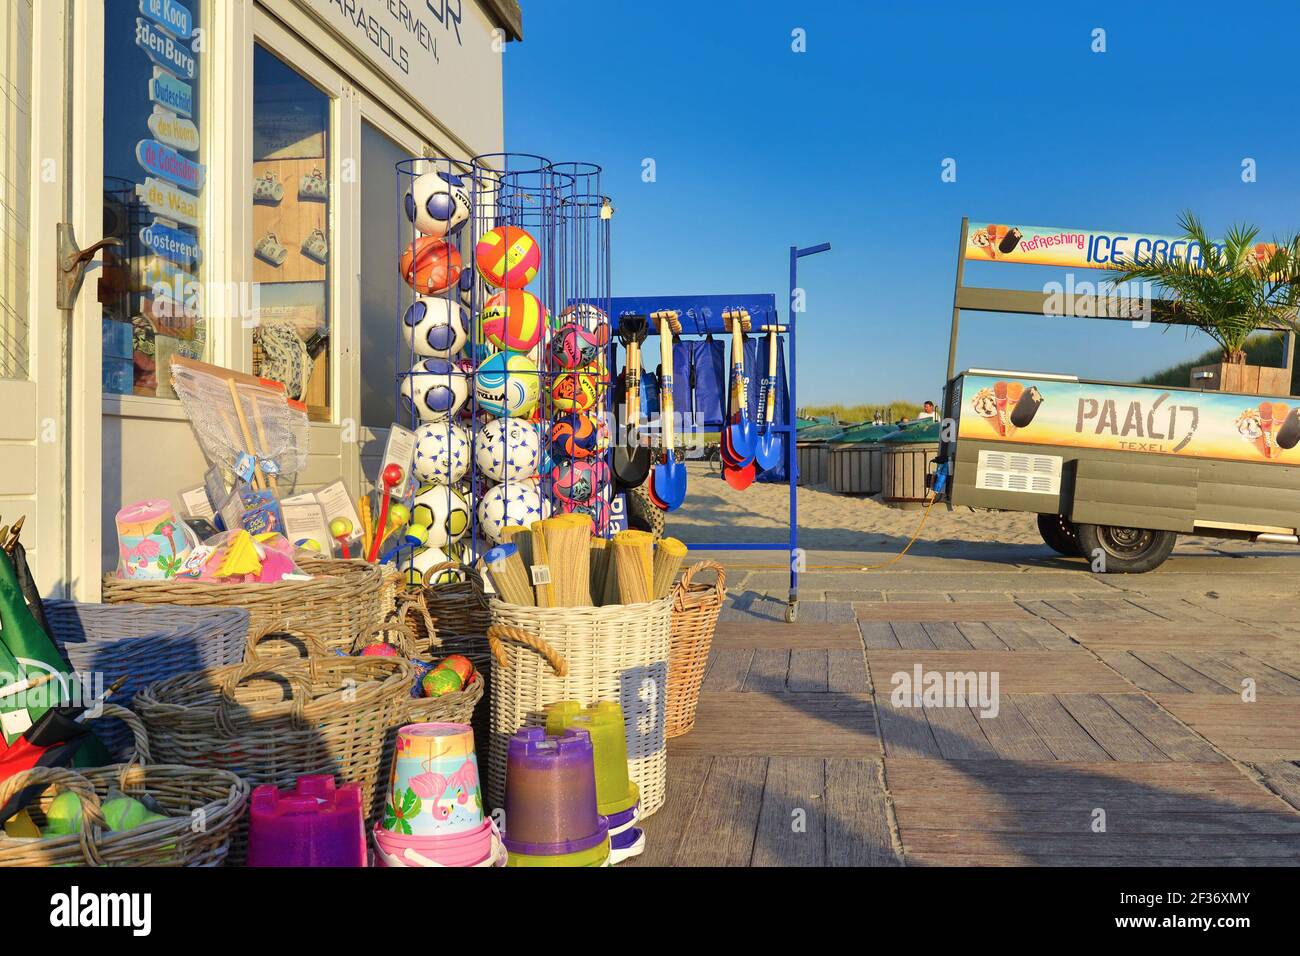 Texel, pays-Bas - août 2019: Kiosque à la plage 'Paal 17' qui vend de la crème glacée, des boissons, des en-cas et des souvenirs et jouets touristiques sur l'île de Texel Banque D'Images